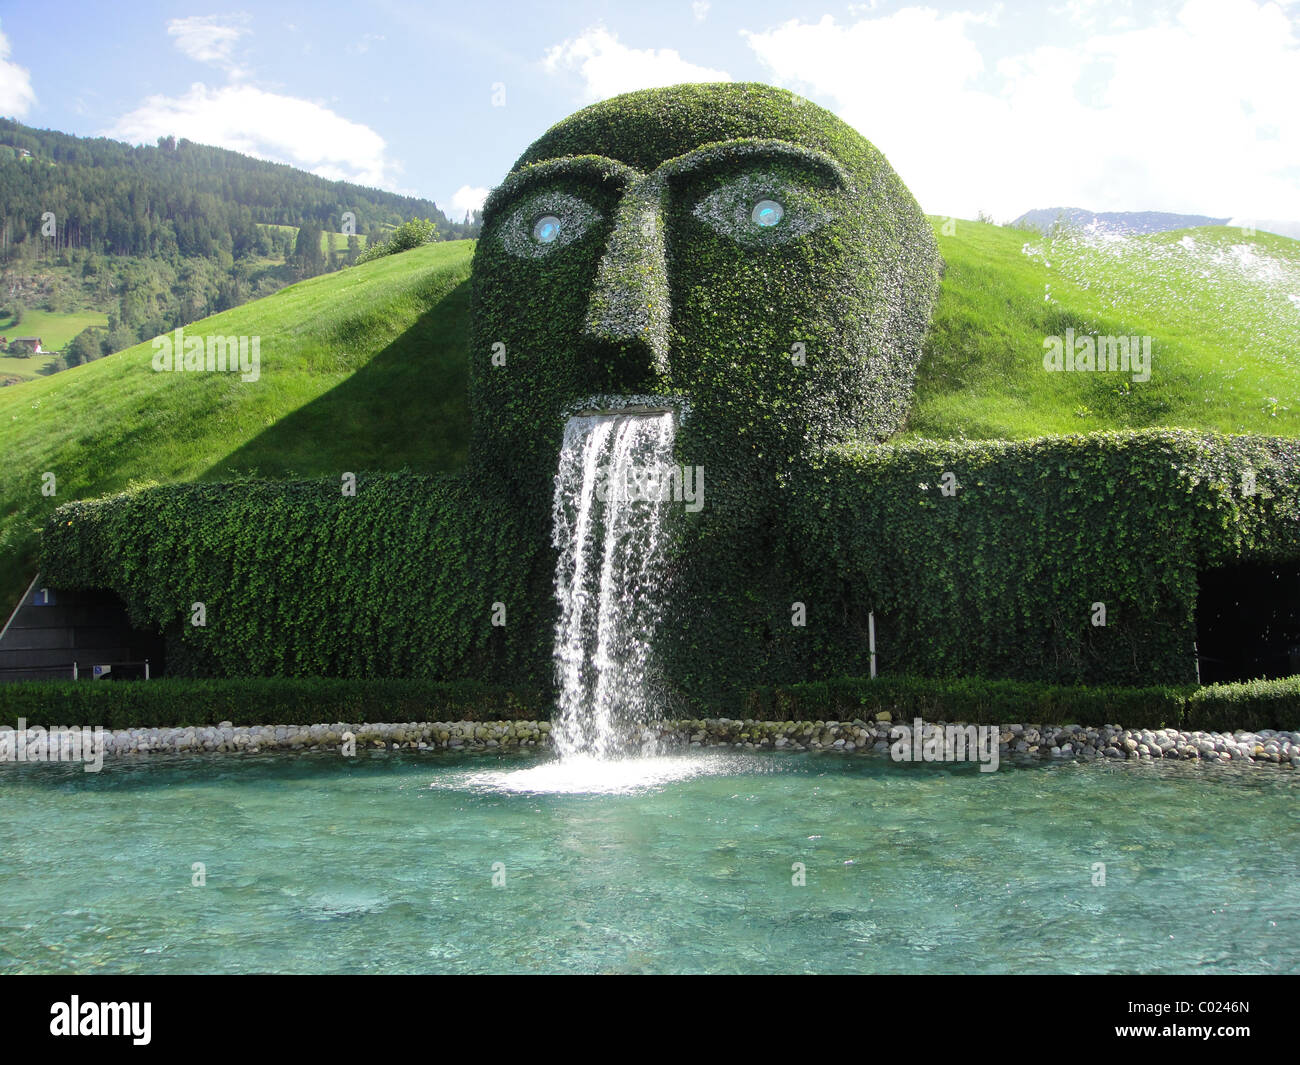 Gesicht-Wasserfall in Swarovski Kristall Welt Österreich Stockfotografie -  Alamy